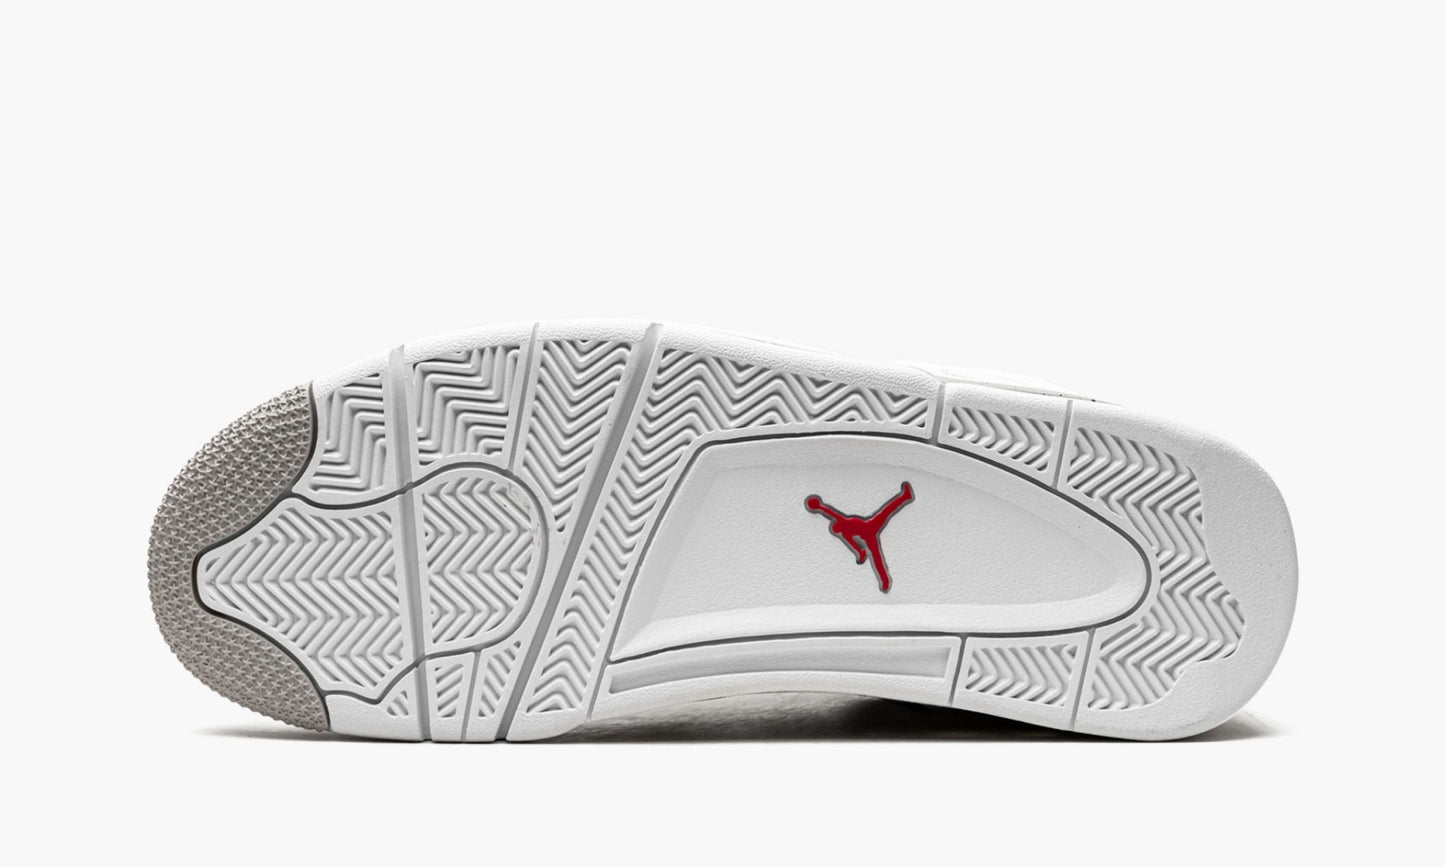 Air Jordan 4 Retro "White Oreo"